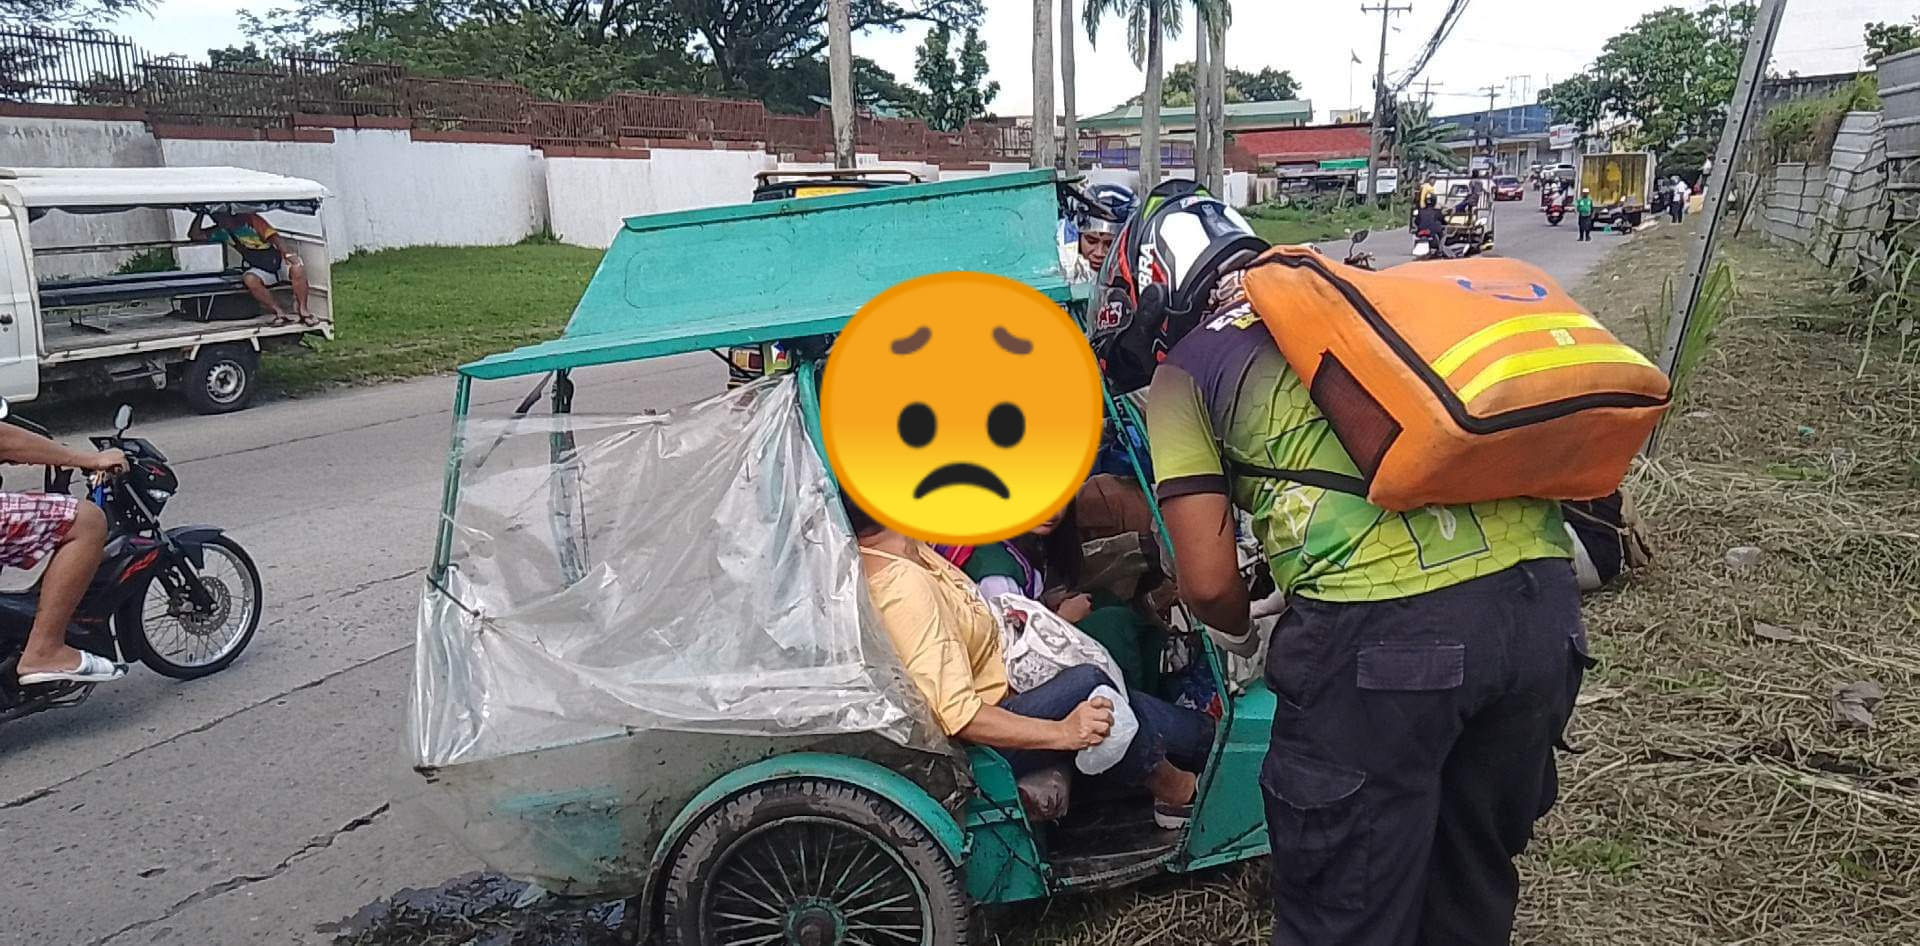 EMR Raptor volunteer responded road crash involving tricycle – Mario Eleno Canoy Jr.